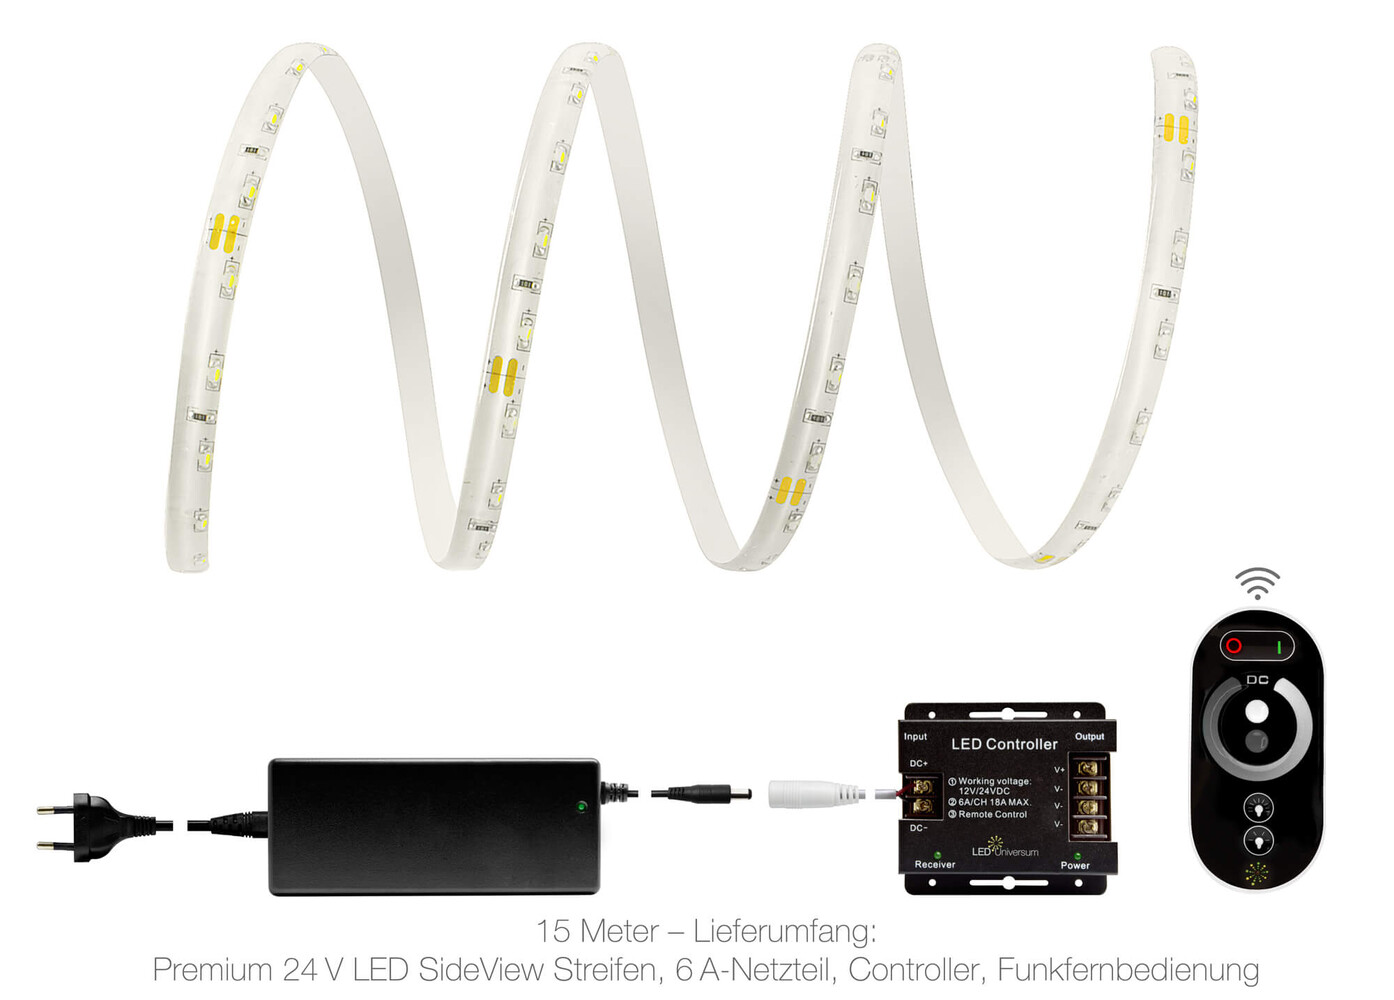 Premium warmweißer LED Streifen von LED Universum mit 60 Lichtpunkten pro Meter und IP65 Schutzklasse